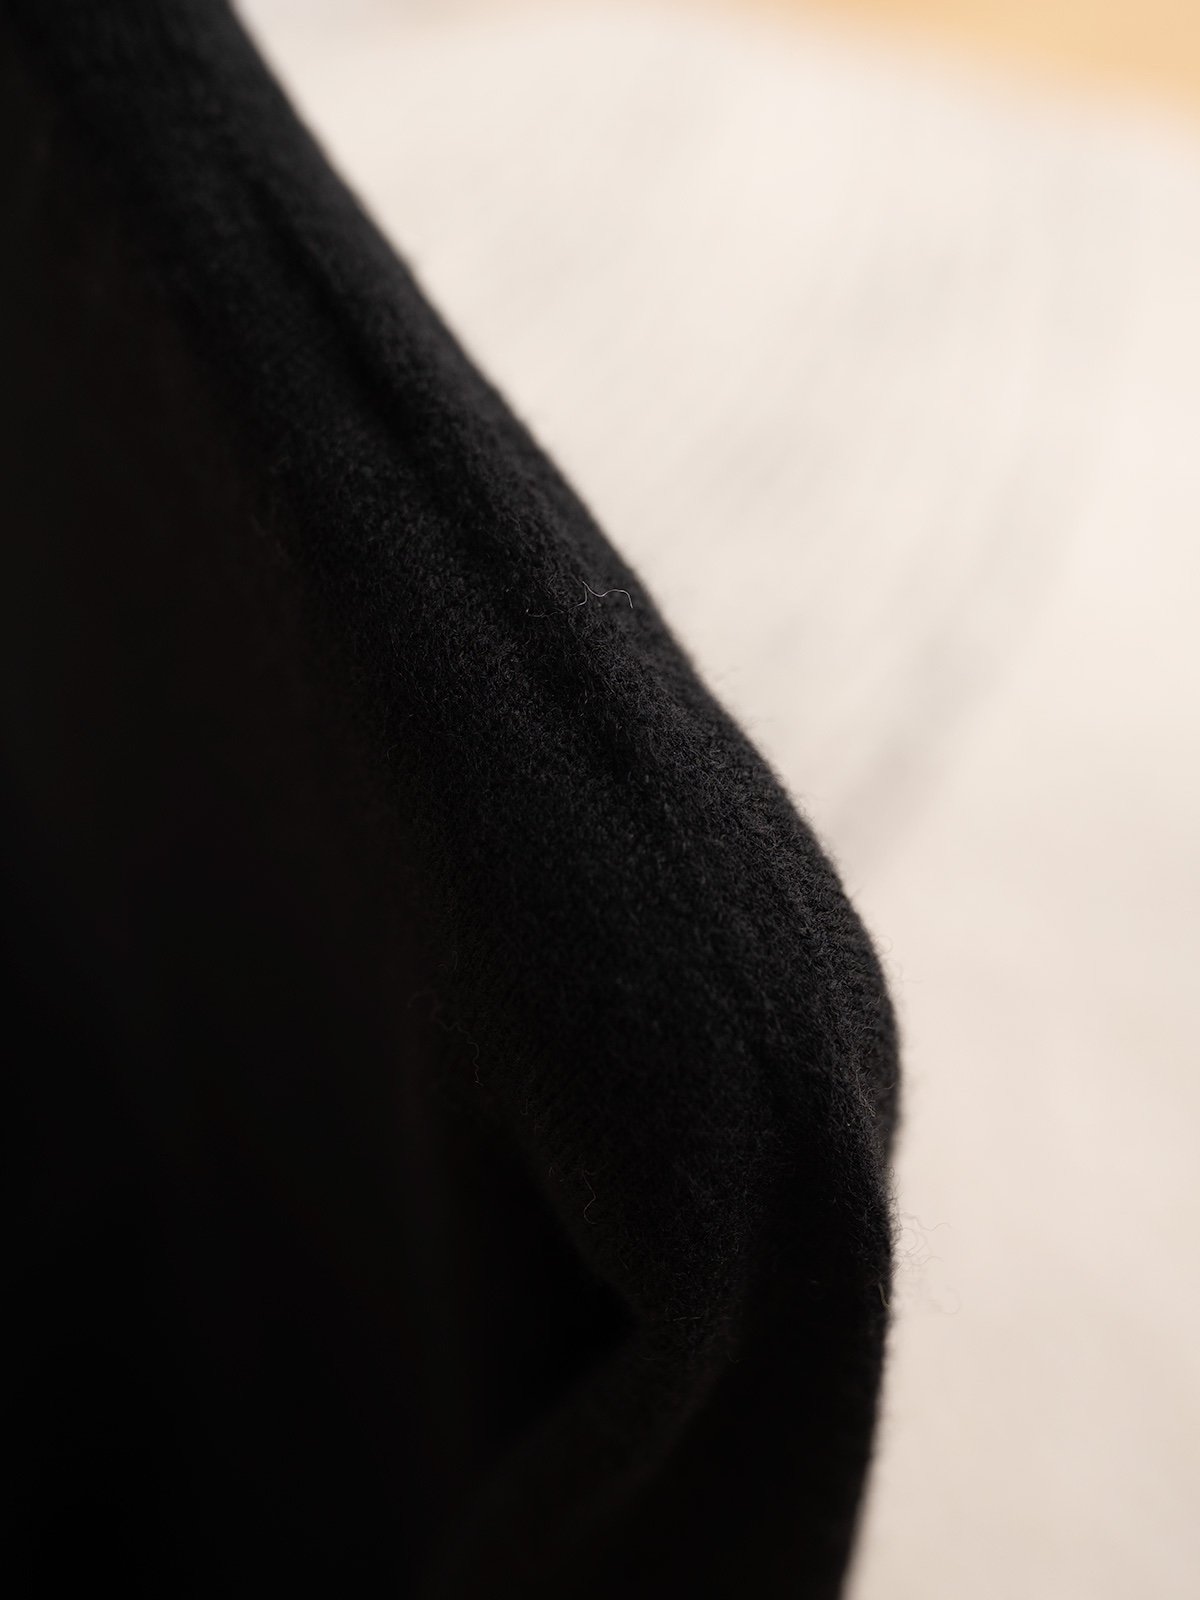 max无缝半高领打底衫7针一条毛织机单边织法无缝工艺领口卷边落肩袖设计下脚袖口1*1坑条糖果五色！羊绒羊